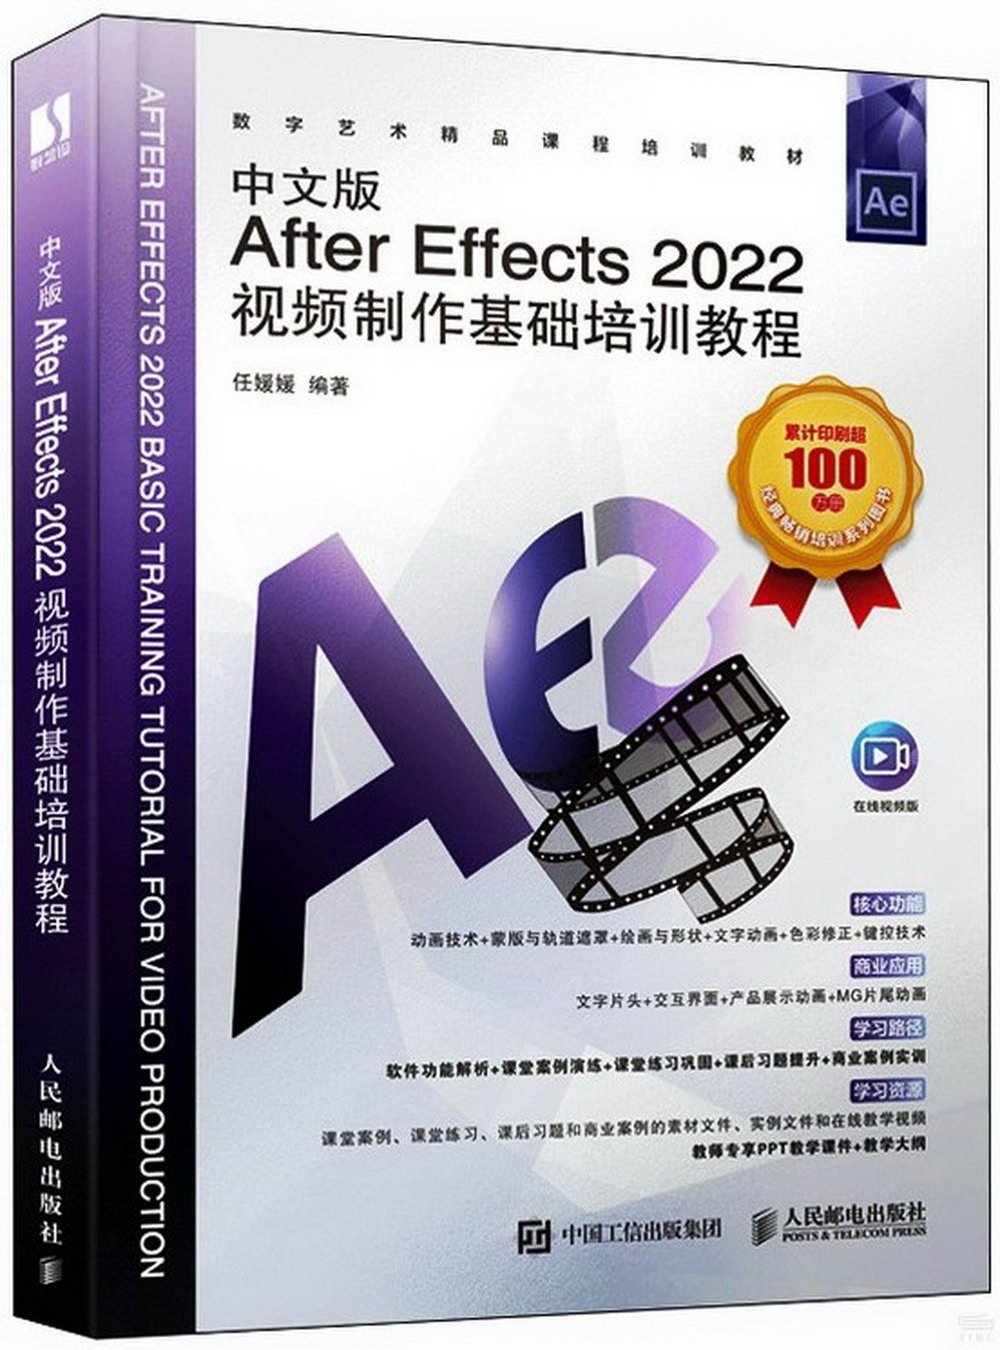 中文版After Effects 2022視頻製作基礎培訓教程